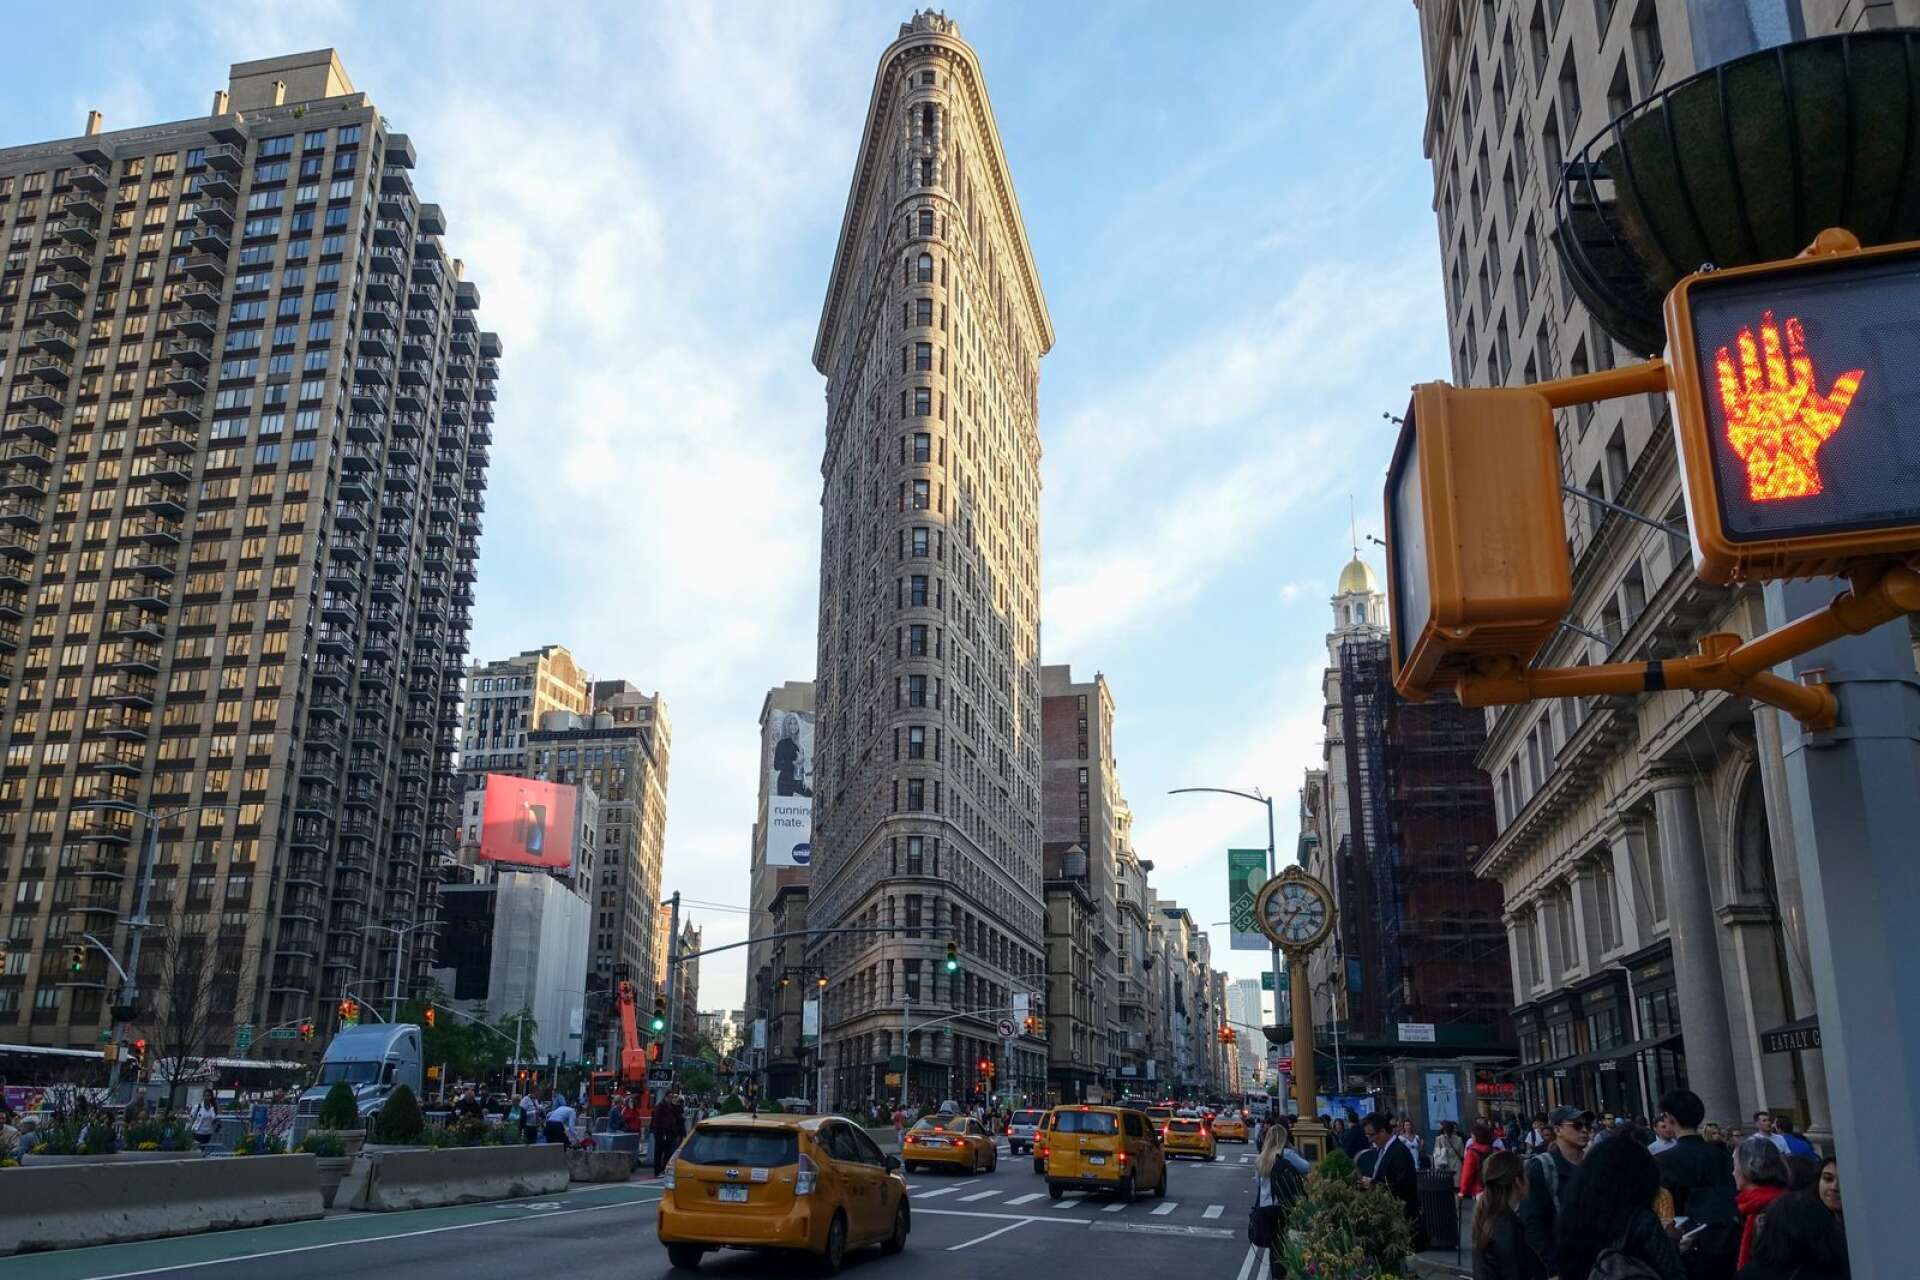 Ikoniska Flat Iron Building i New York är förebilden för de olika så kallade strykjärnshusen runt om i Världen. 